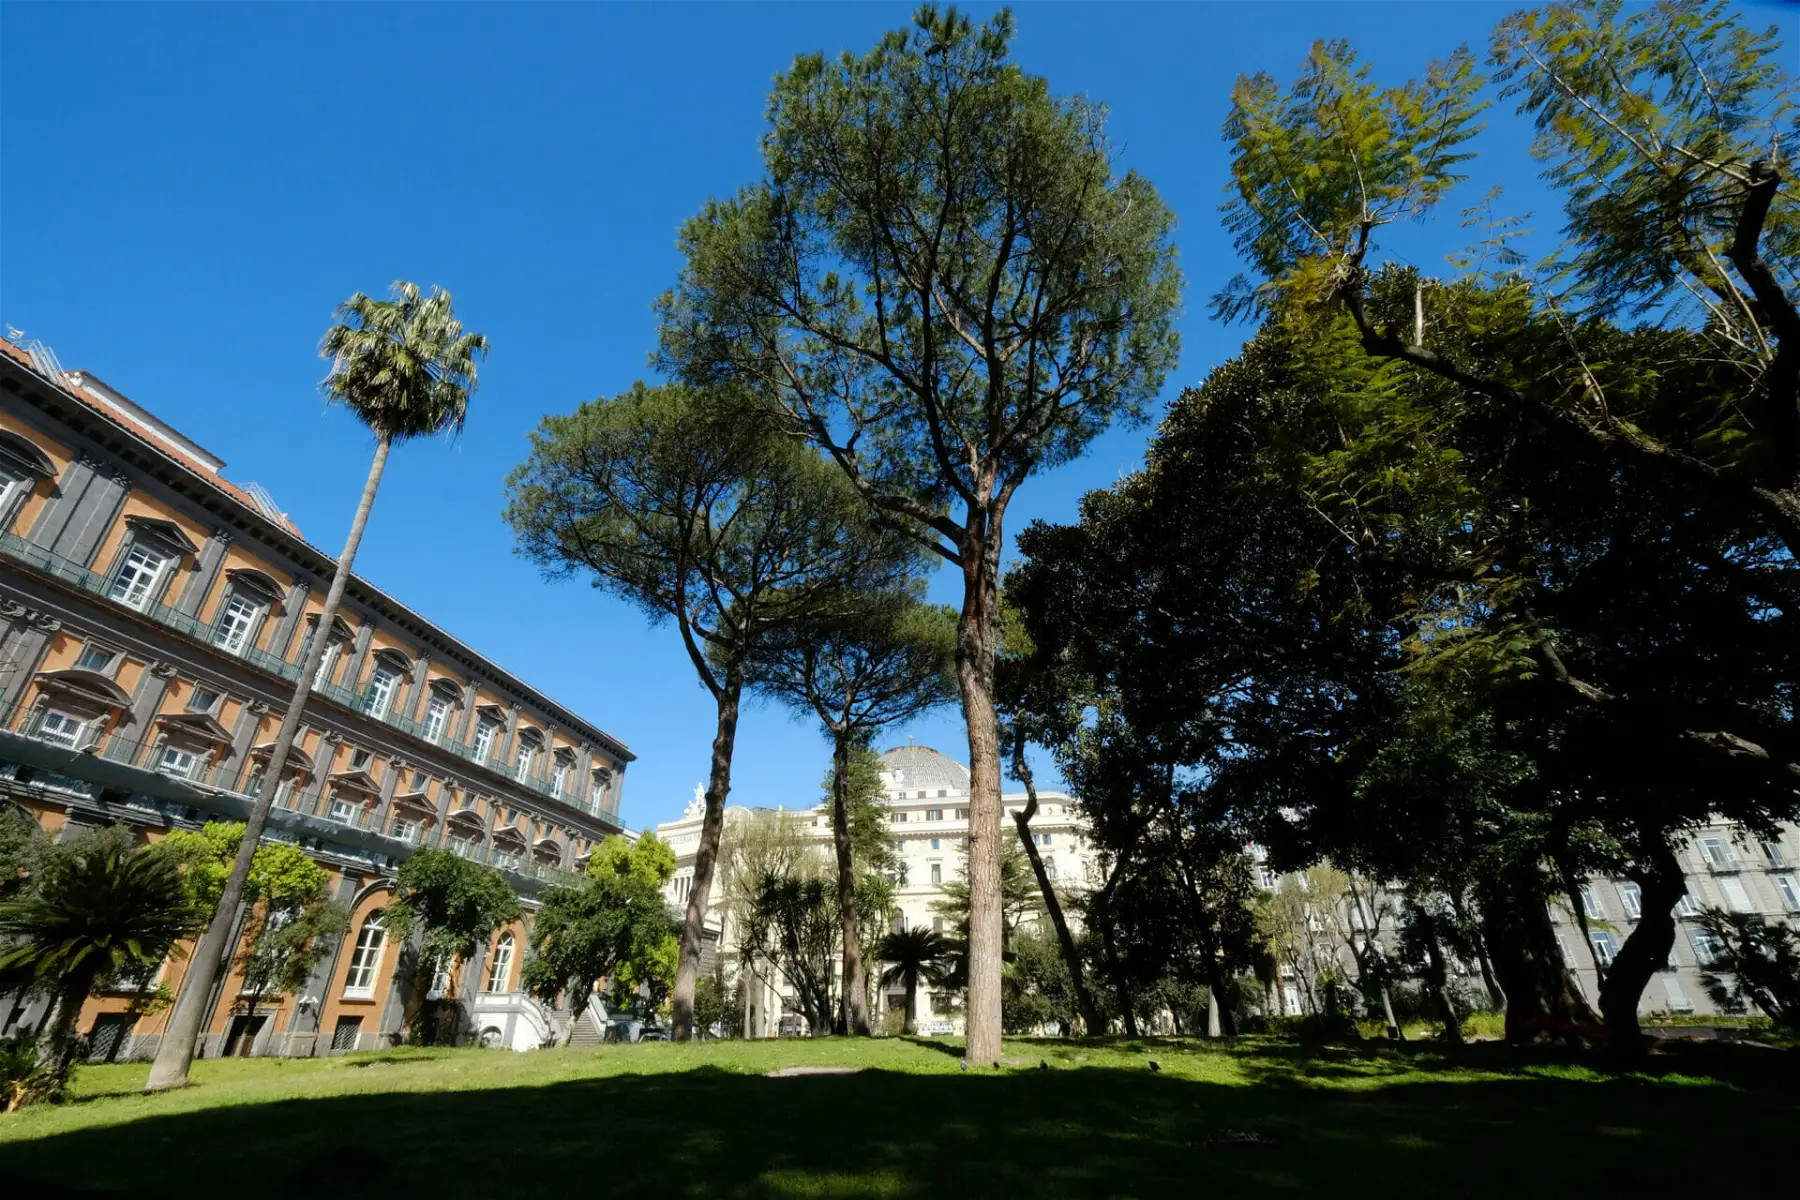 Napoli, confermato il divieto d'accesso ai cani nei giardini storici di Palazzo Reale. Il Tar respinge il ricorso